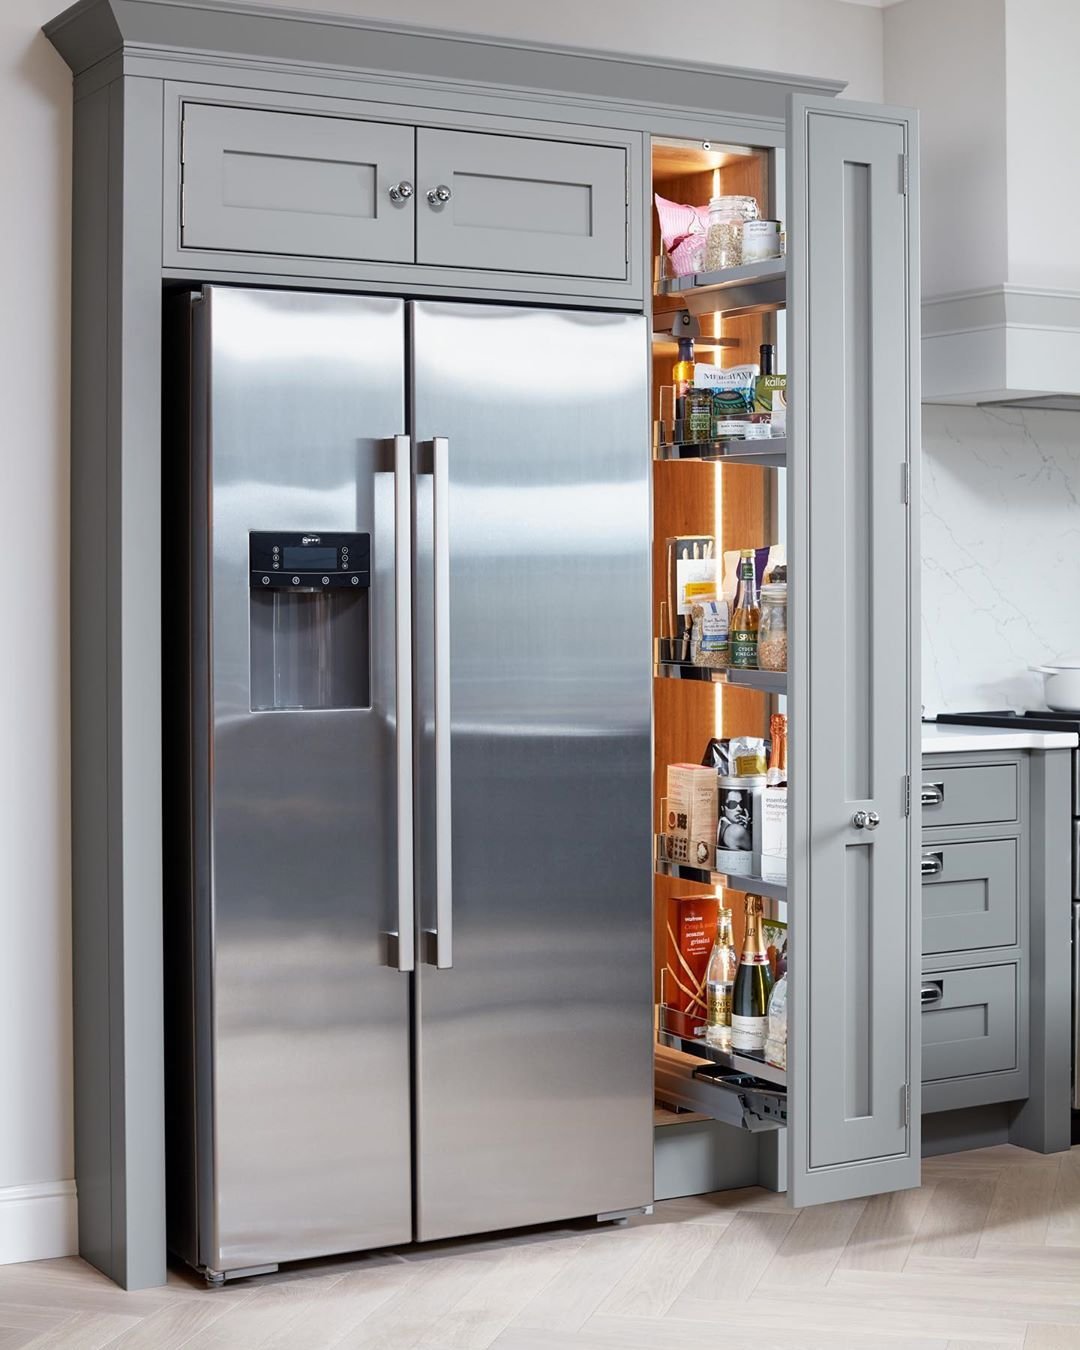 Холодильник встроенный в кухню